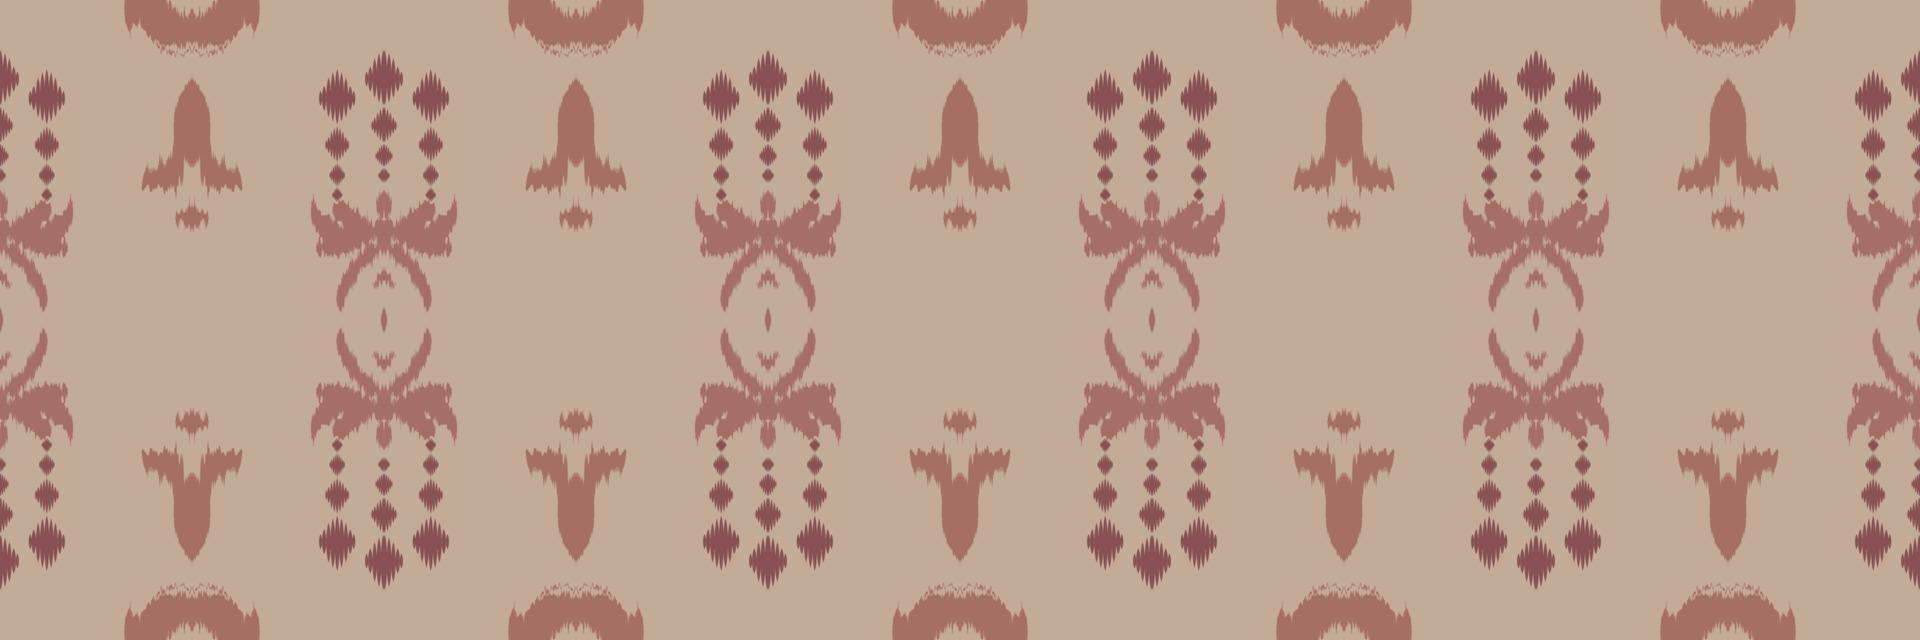 motiv afrikansk ikat batik textil- sömlös mönster digital vektor design för skriva ut saree kurti borneo tyg gräns borsta symboler färgrutor bomull